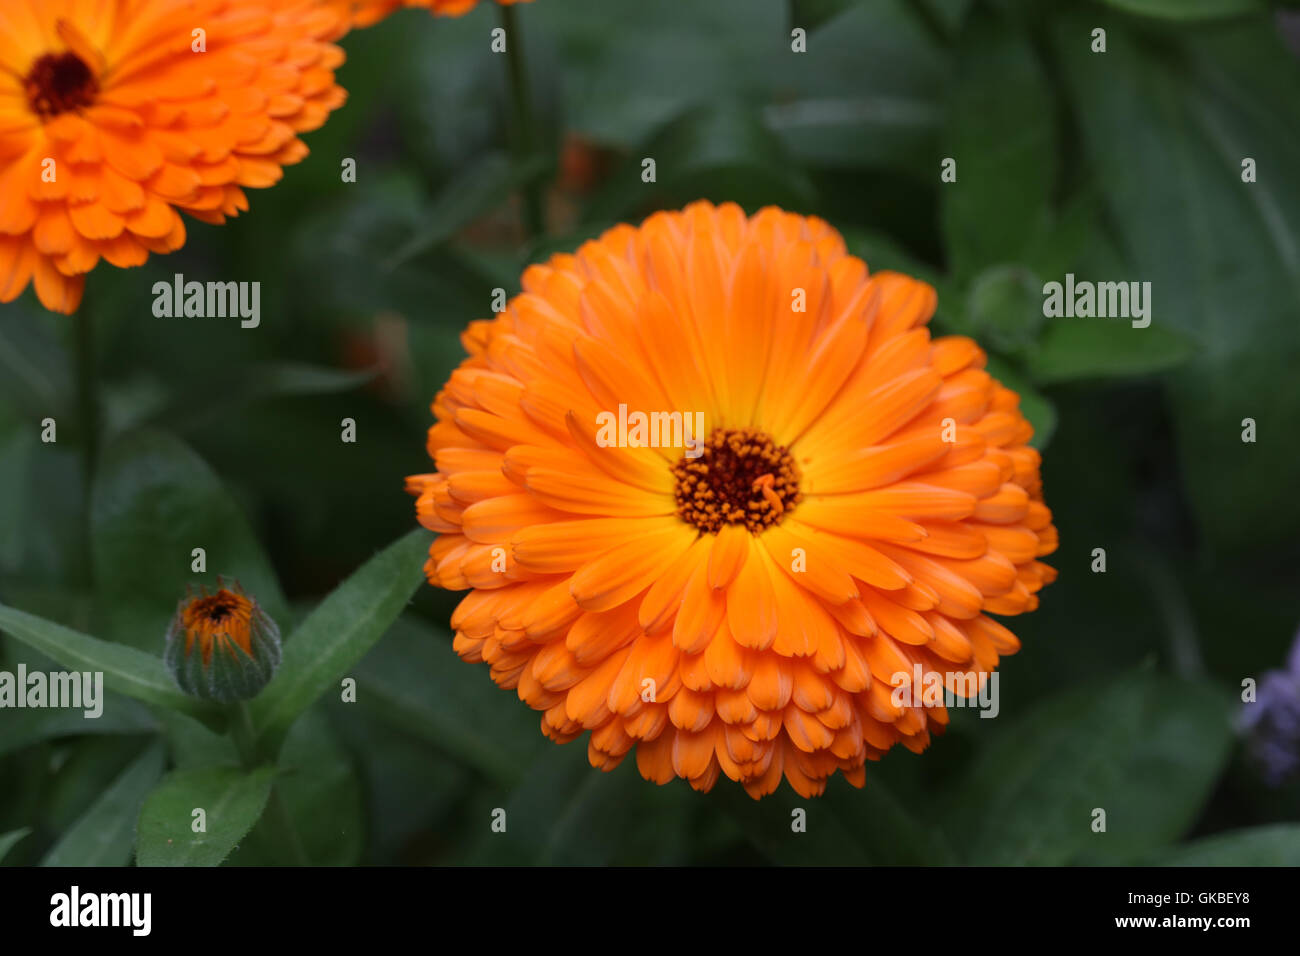 Vibrant orange flowers Stock Photo